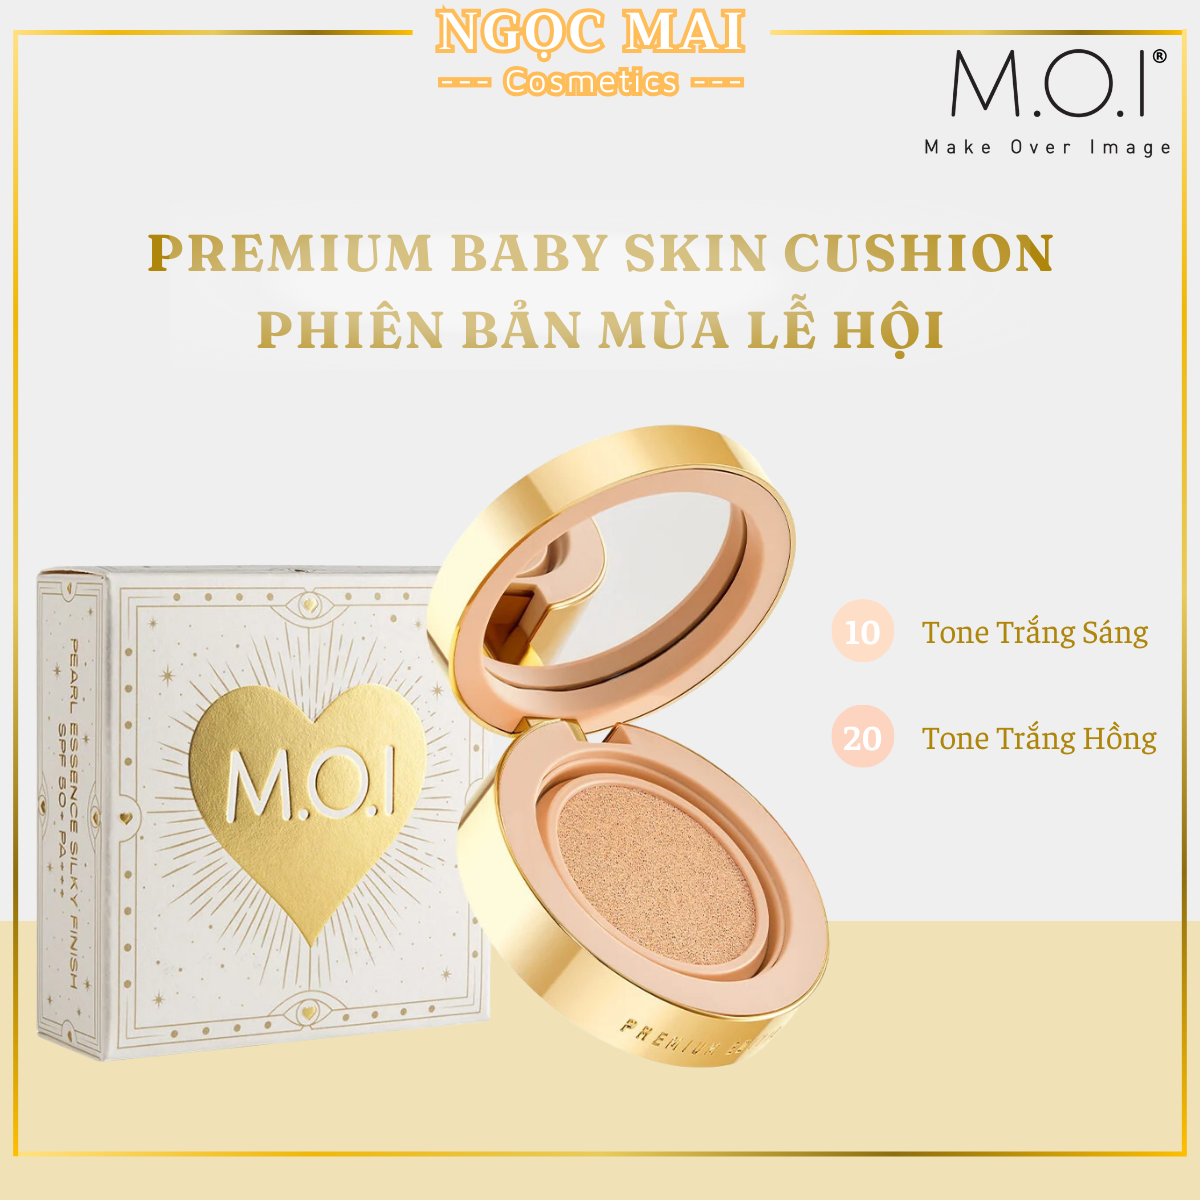 Phiên Bản Mùa Lễ Hội Phấn Nước Premium Baby Skin 12g M.O.I Cosmetics - Mỹ